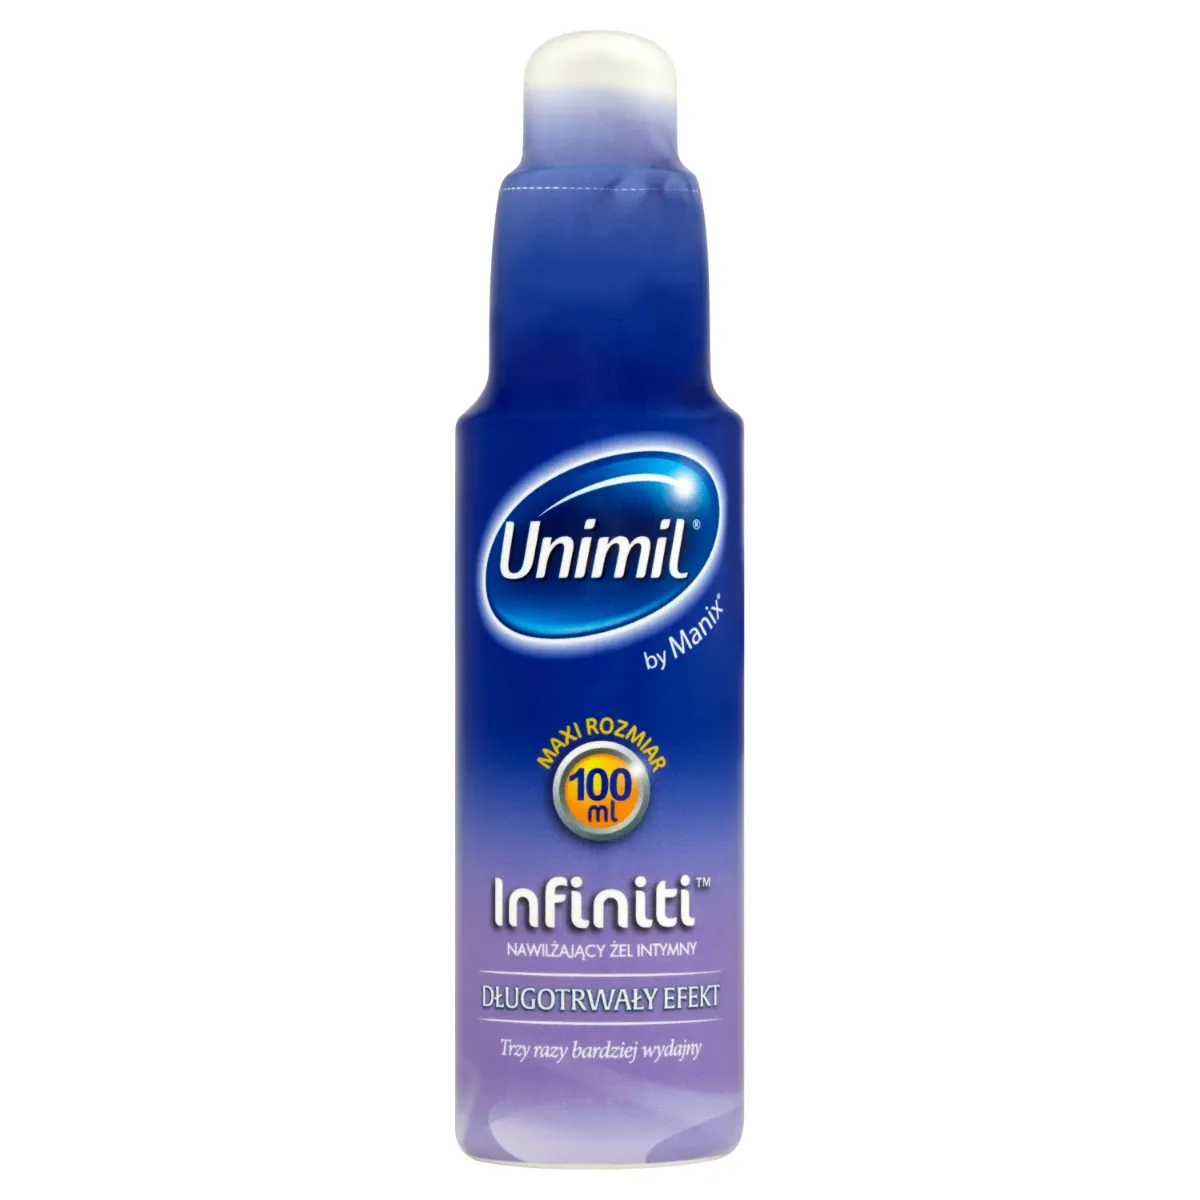 Unimil Infiniti, nawilżający żel intymny, 100 ml